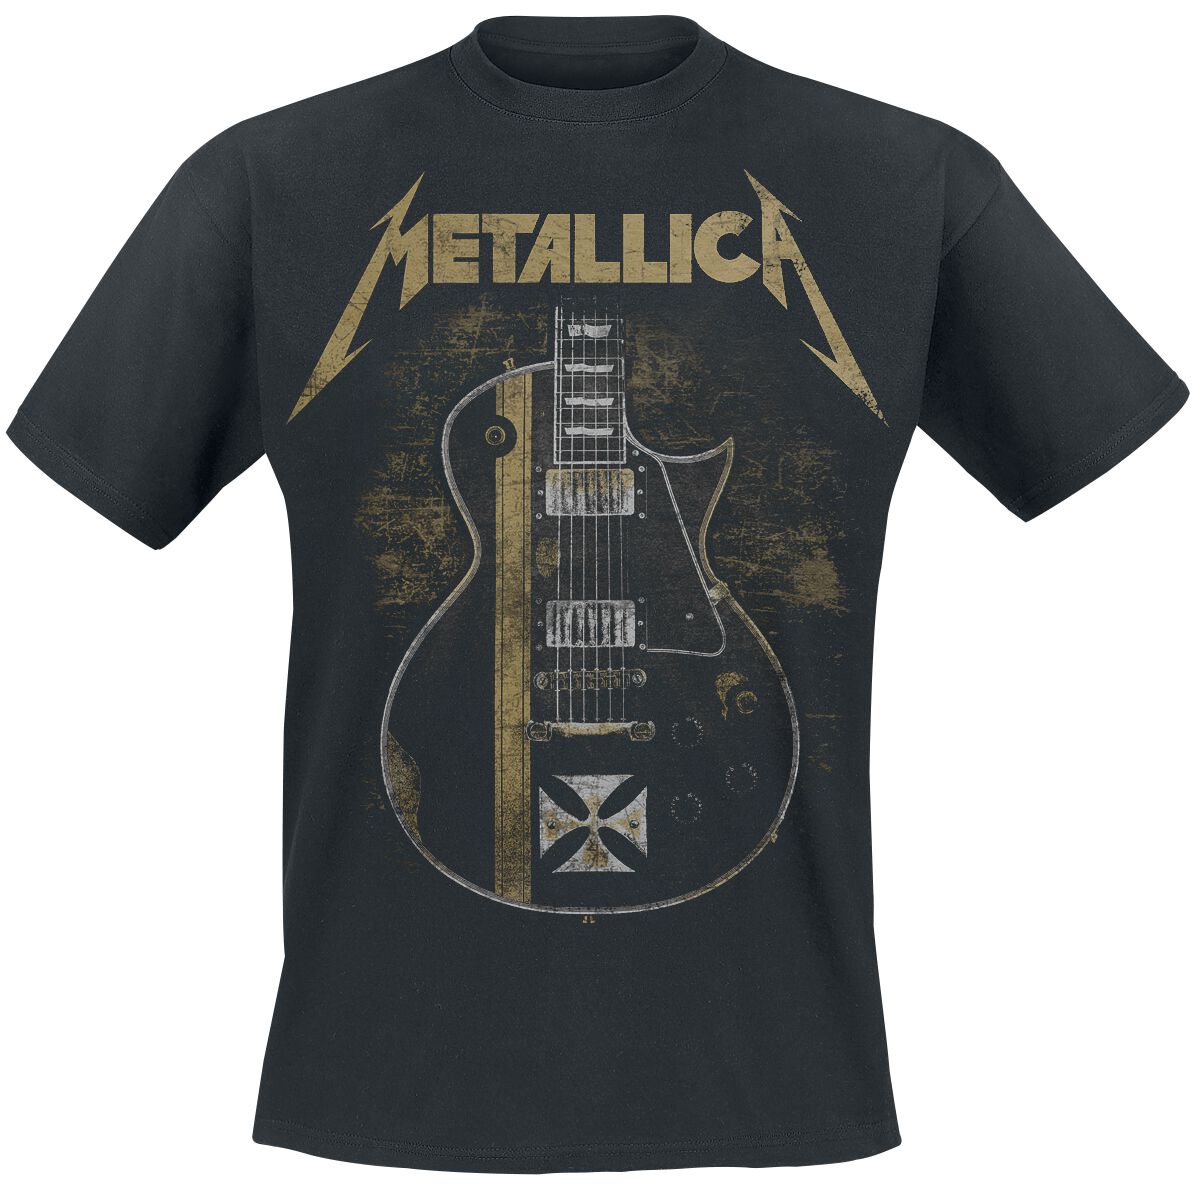 Image of Metallica Hetfield Iron Cross Guitar T-Shirt schwarz